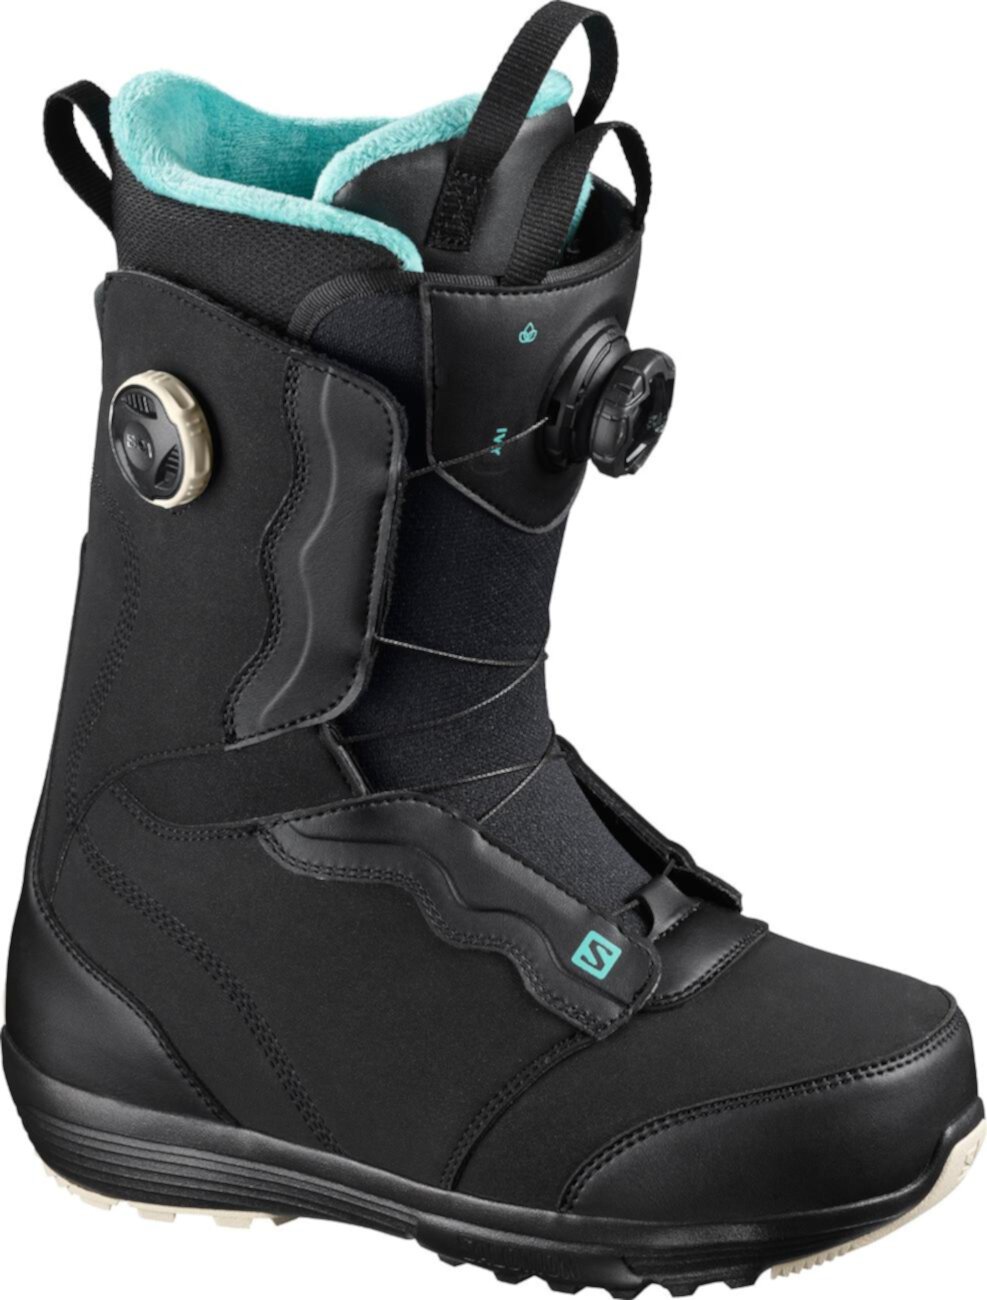 Ботинки для сноуборда Ivy Boa STR8JKT - женские - 2020/2021 Salomon